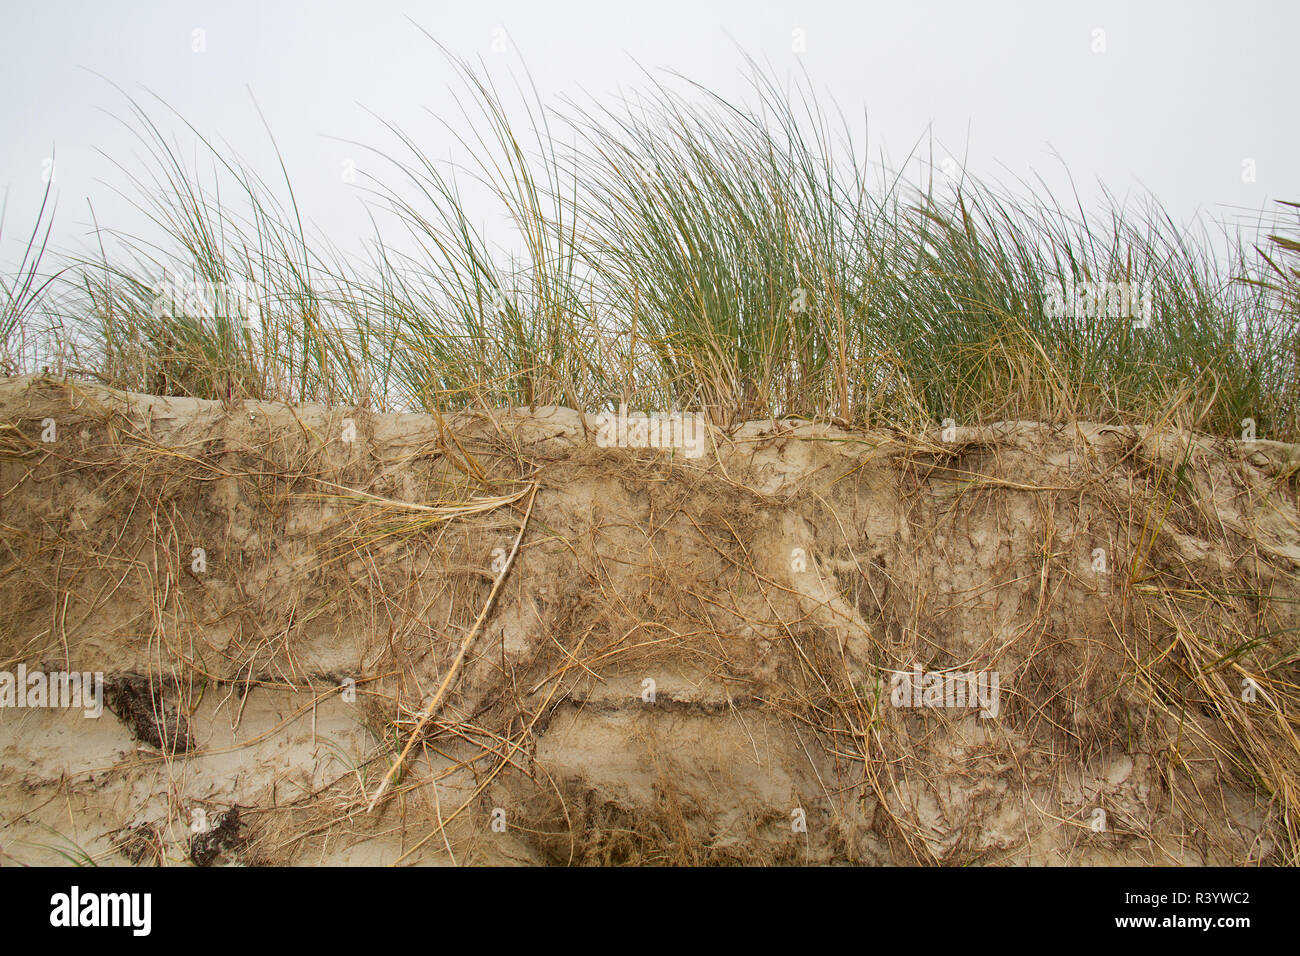 Umfangreiche u-root System der Marram Gras wird sichtbar nach Erosion einer Düne Stockfoto